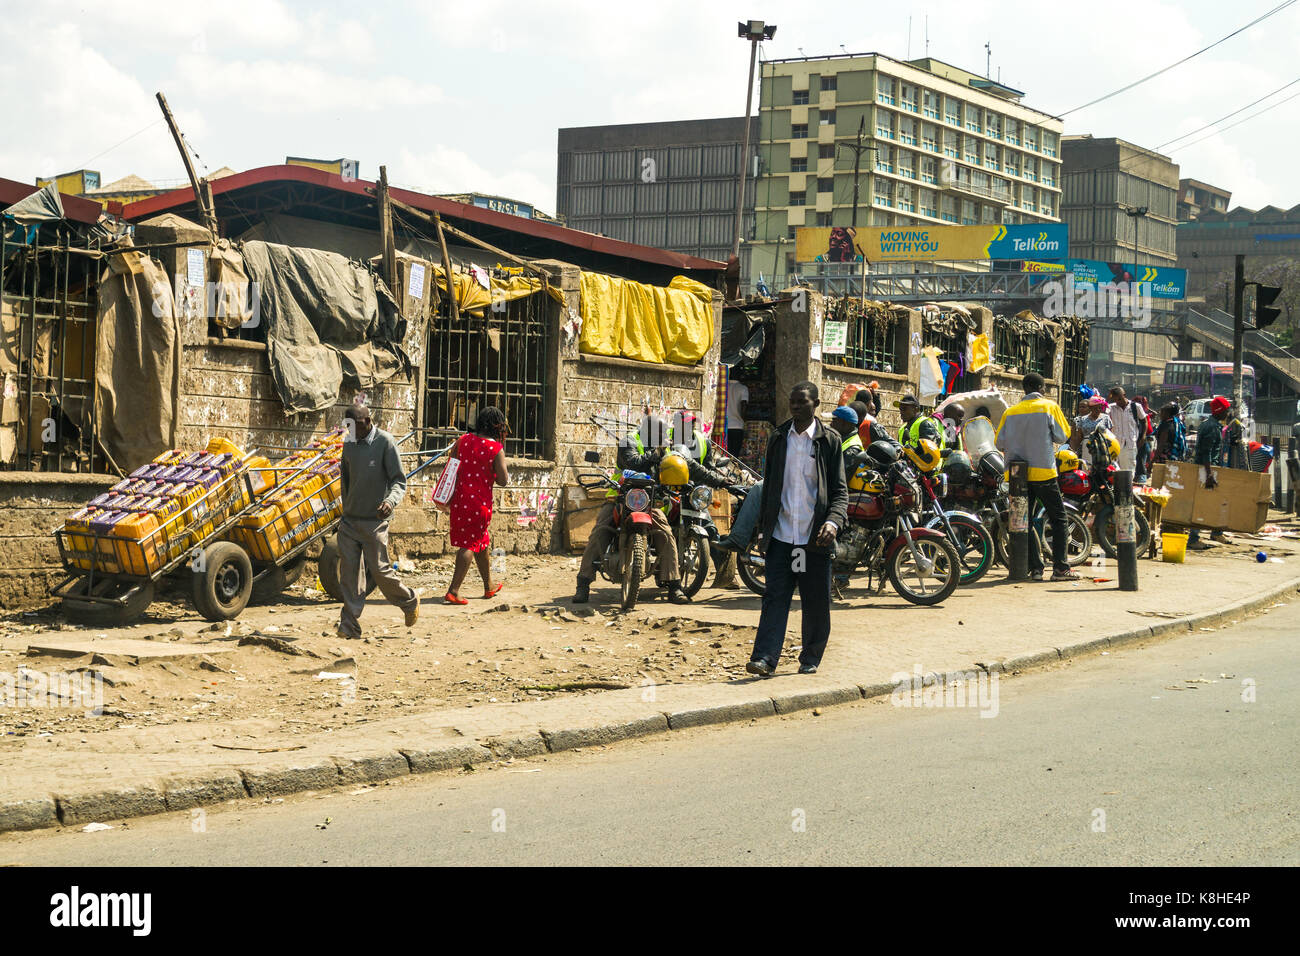 La chaussée routière avec des gens, les cavaliers boda boda en moto, et d'attente des magasins et bâtiments en arrière-plan, Nairobi, Kenya Banque D'Images